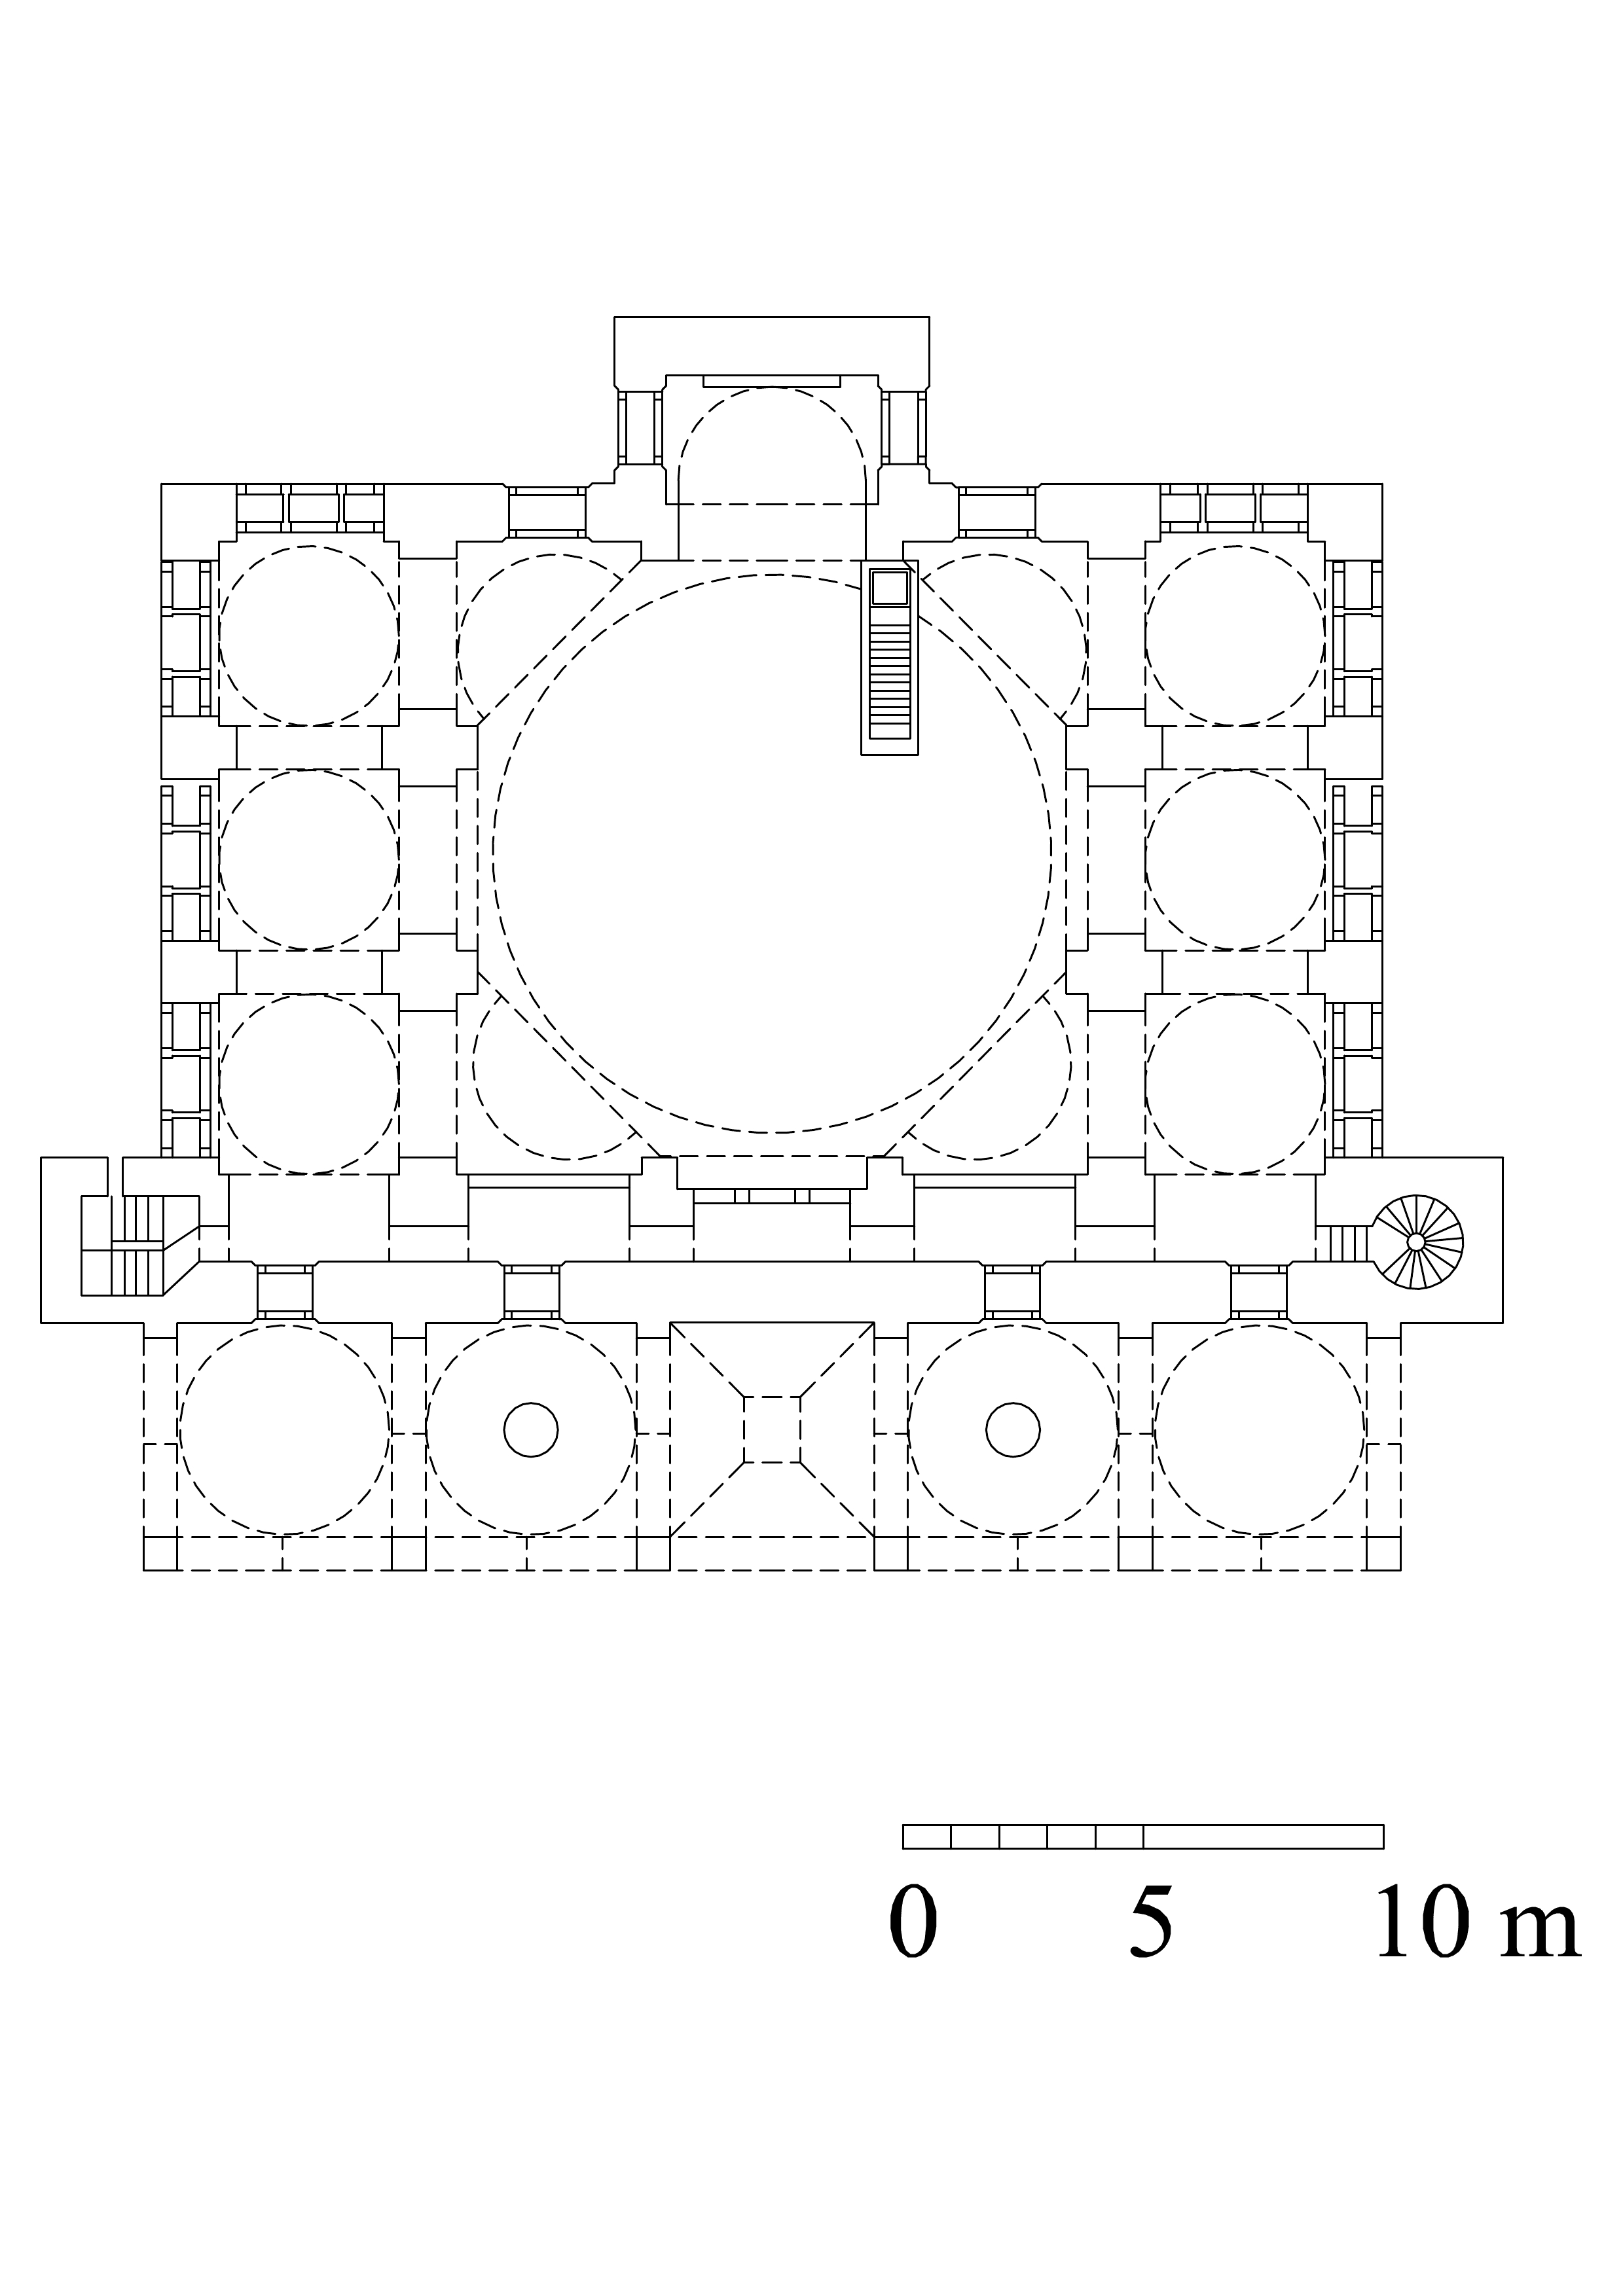 Floor plan of mosque, gallery level